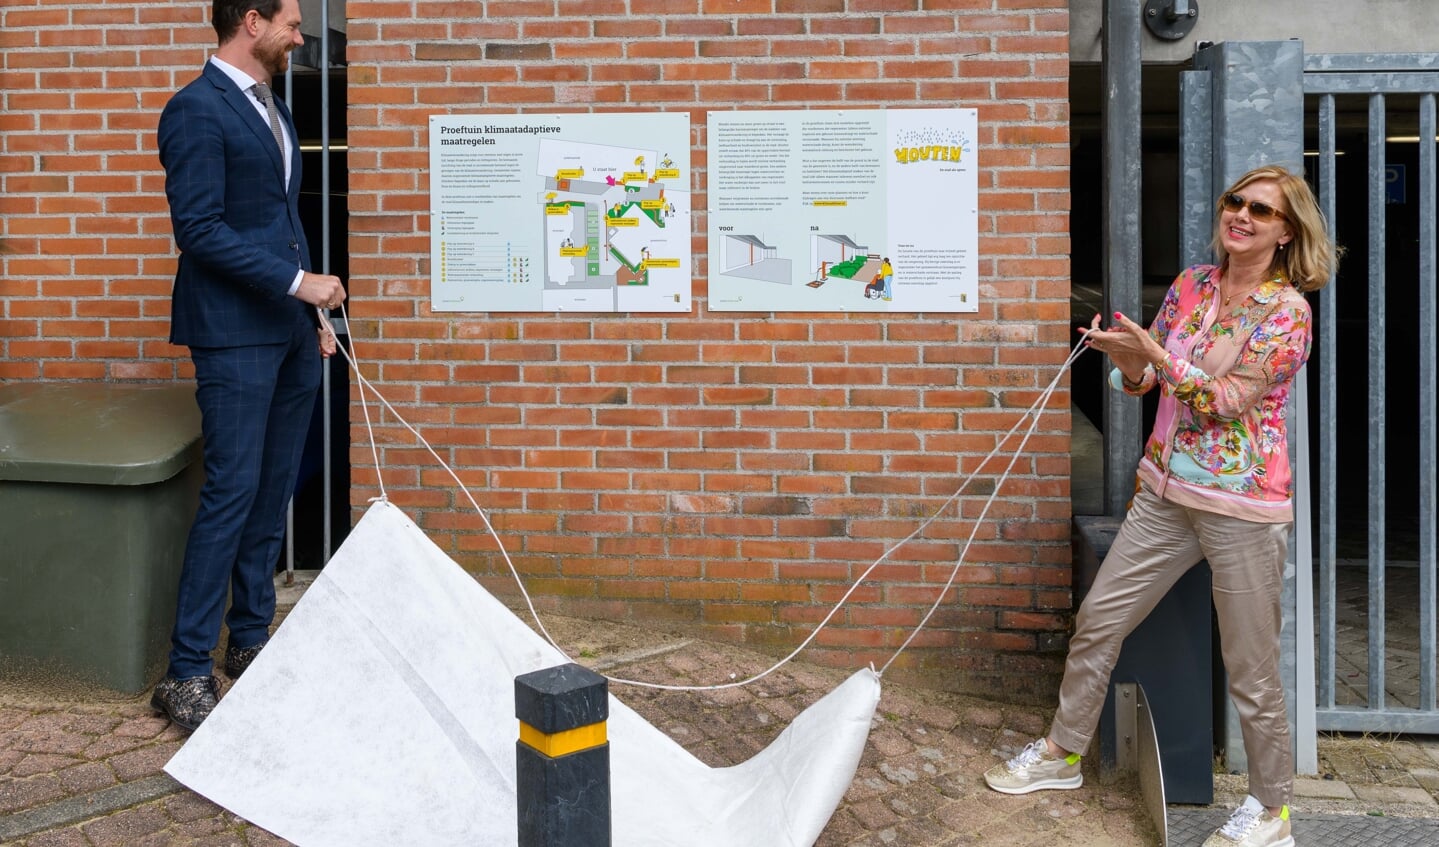 Demissionair minister Cora van Nieuwenhuizen opende met wethouder Bos de klimaatadaptieve proeftuin